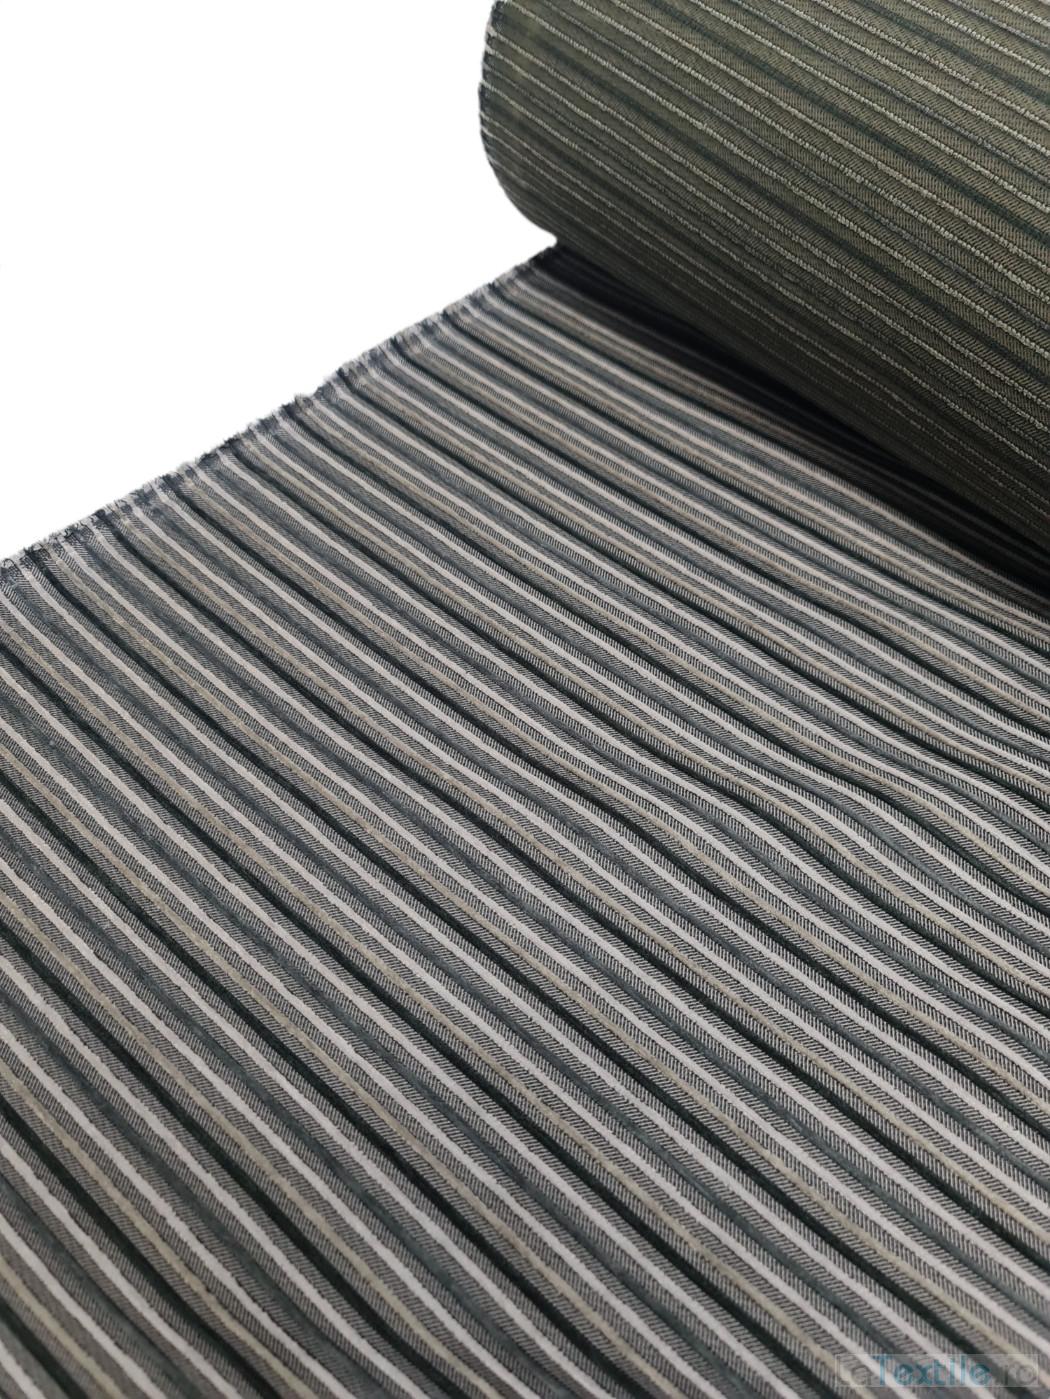 Material tapiterie raiat nuante de gri cu fibra naturala